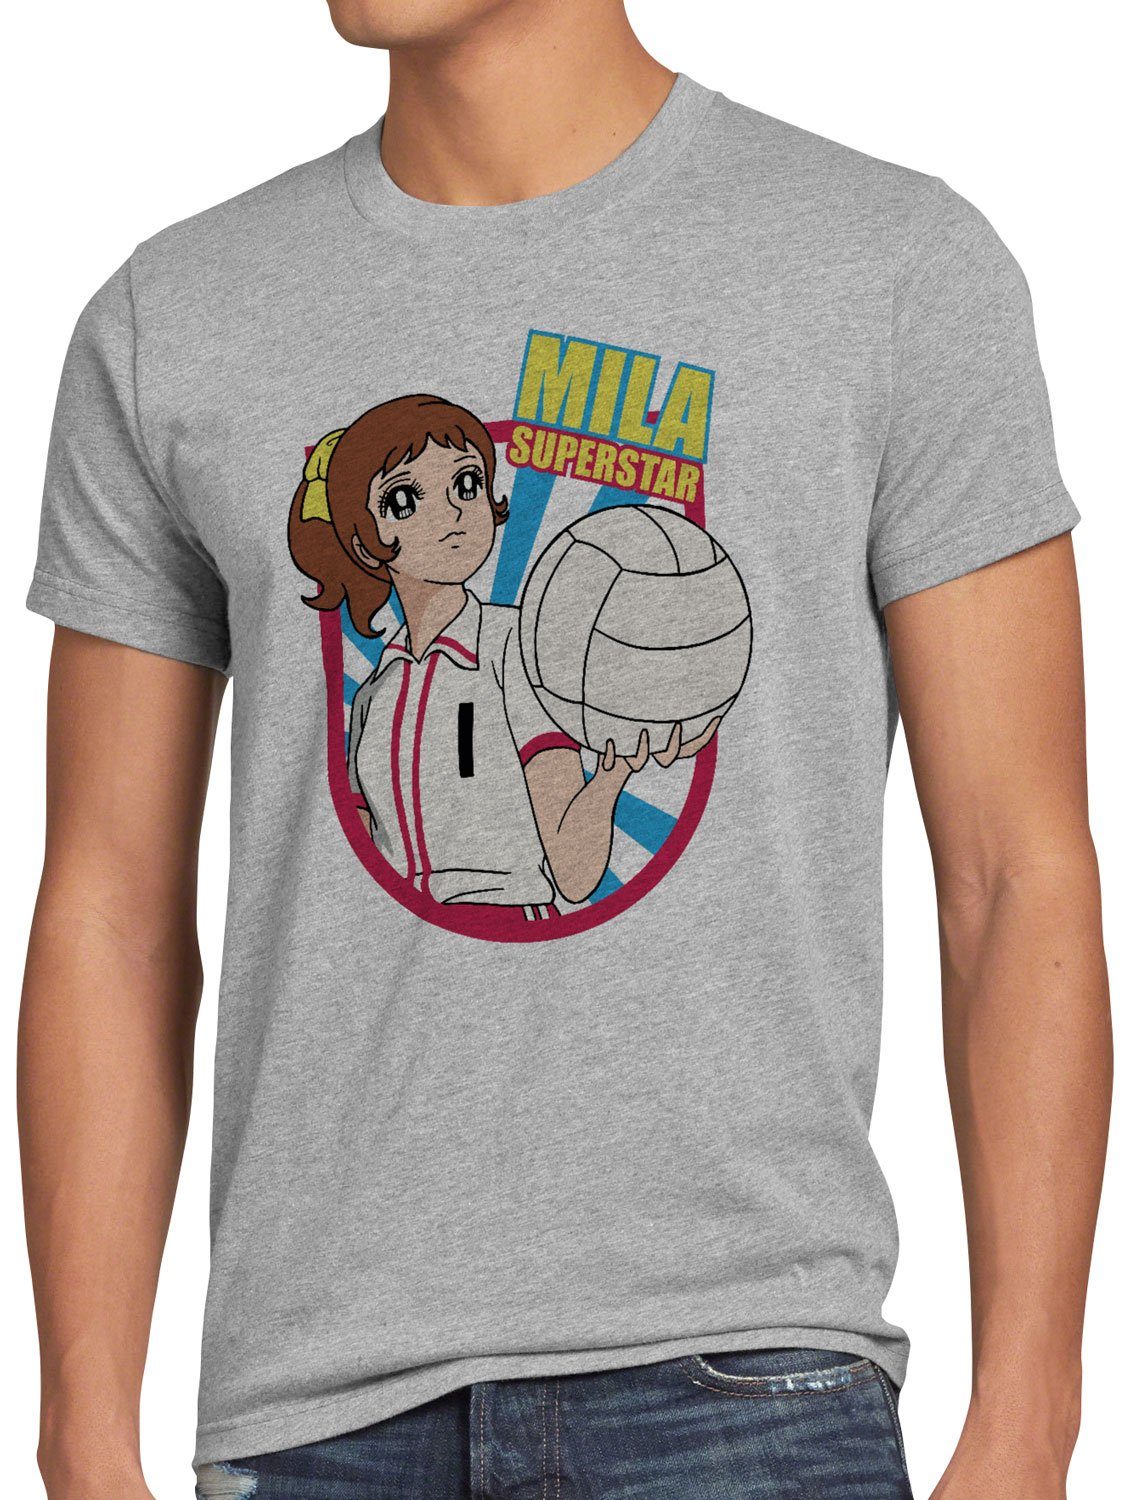 Herren Superstar japan Mila style3 team grau T-Shirt Print-Shirt volleyball meliert